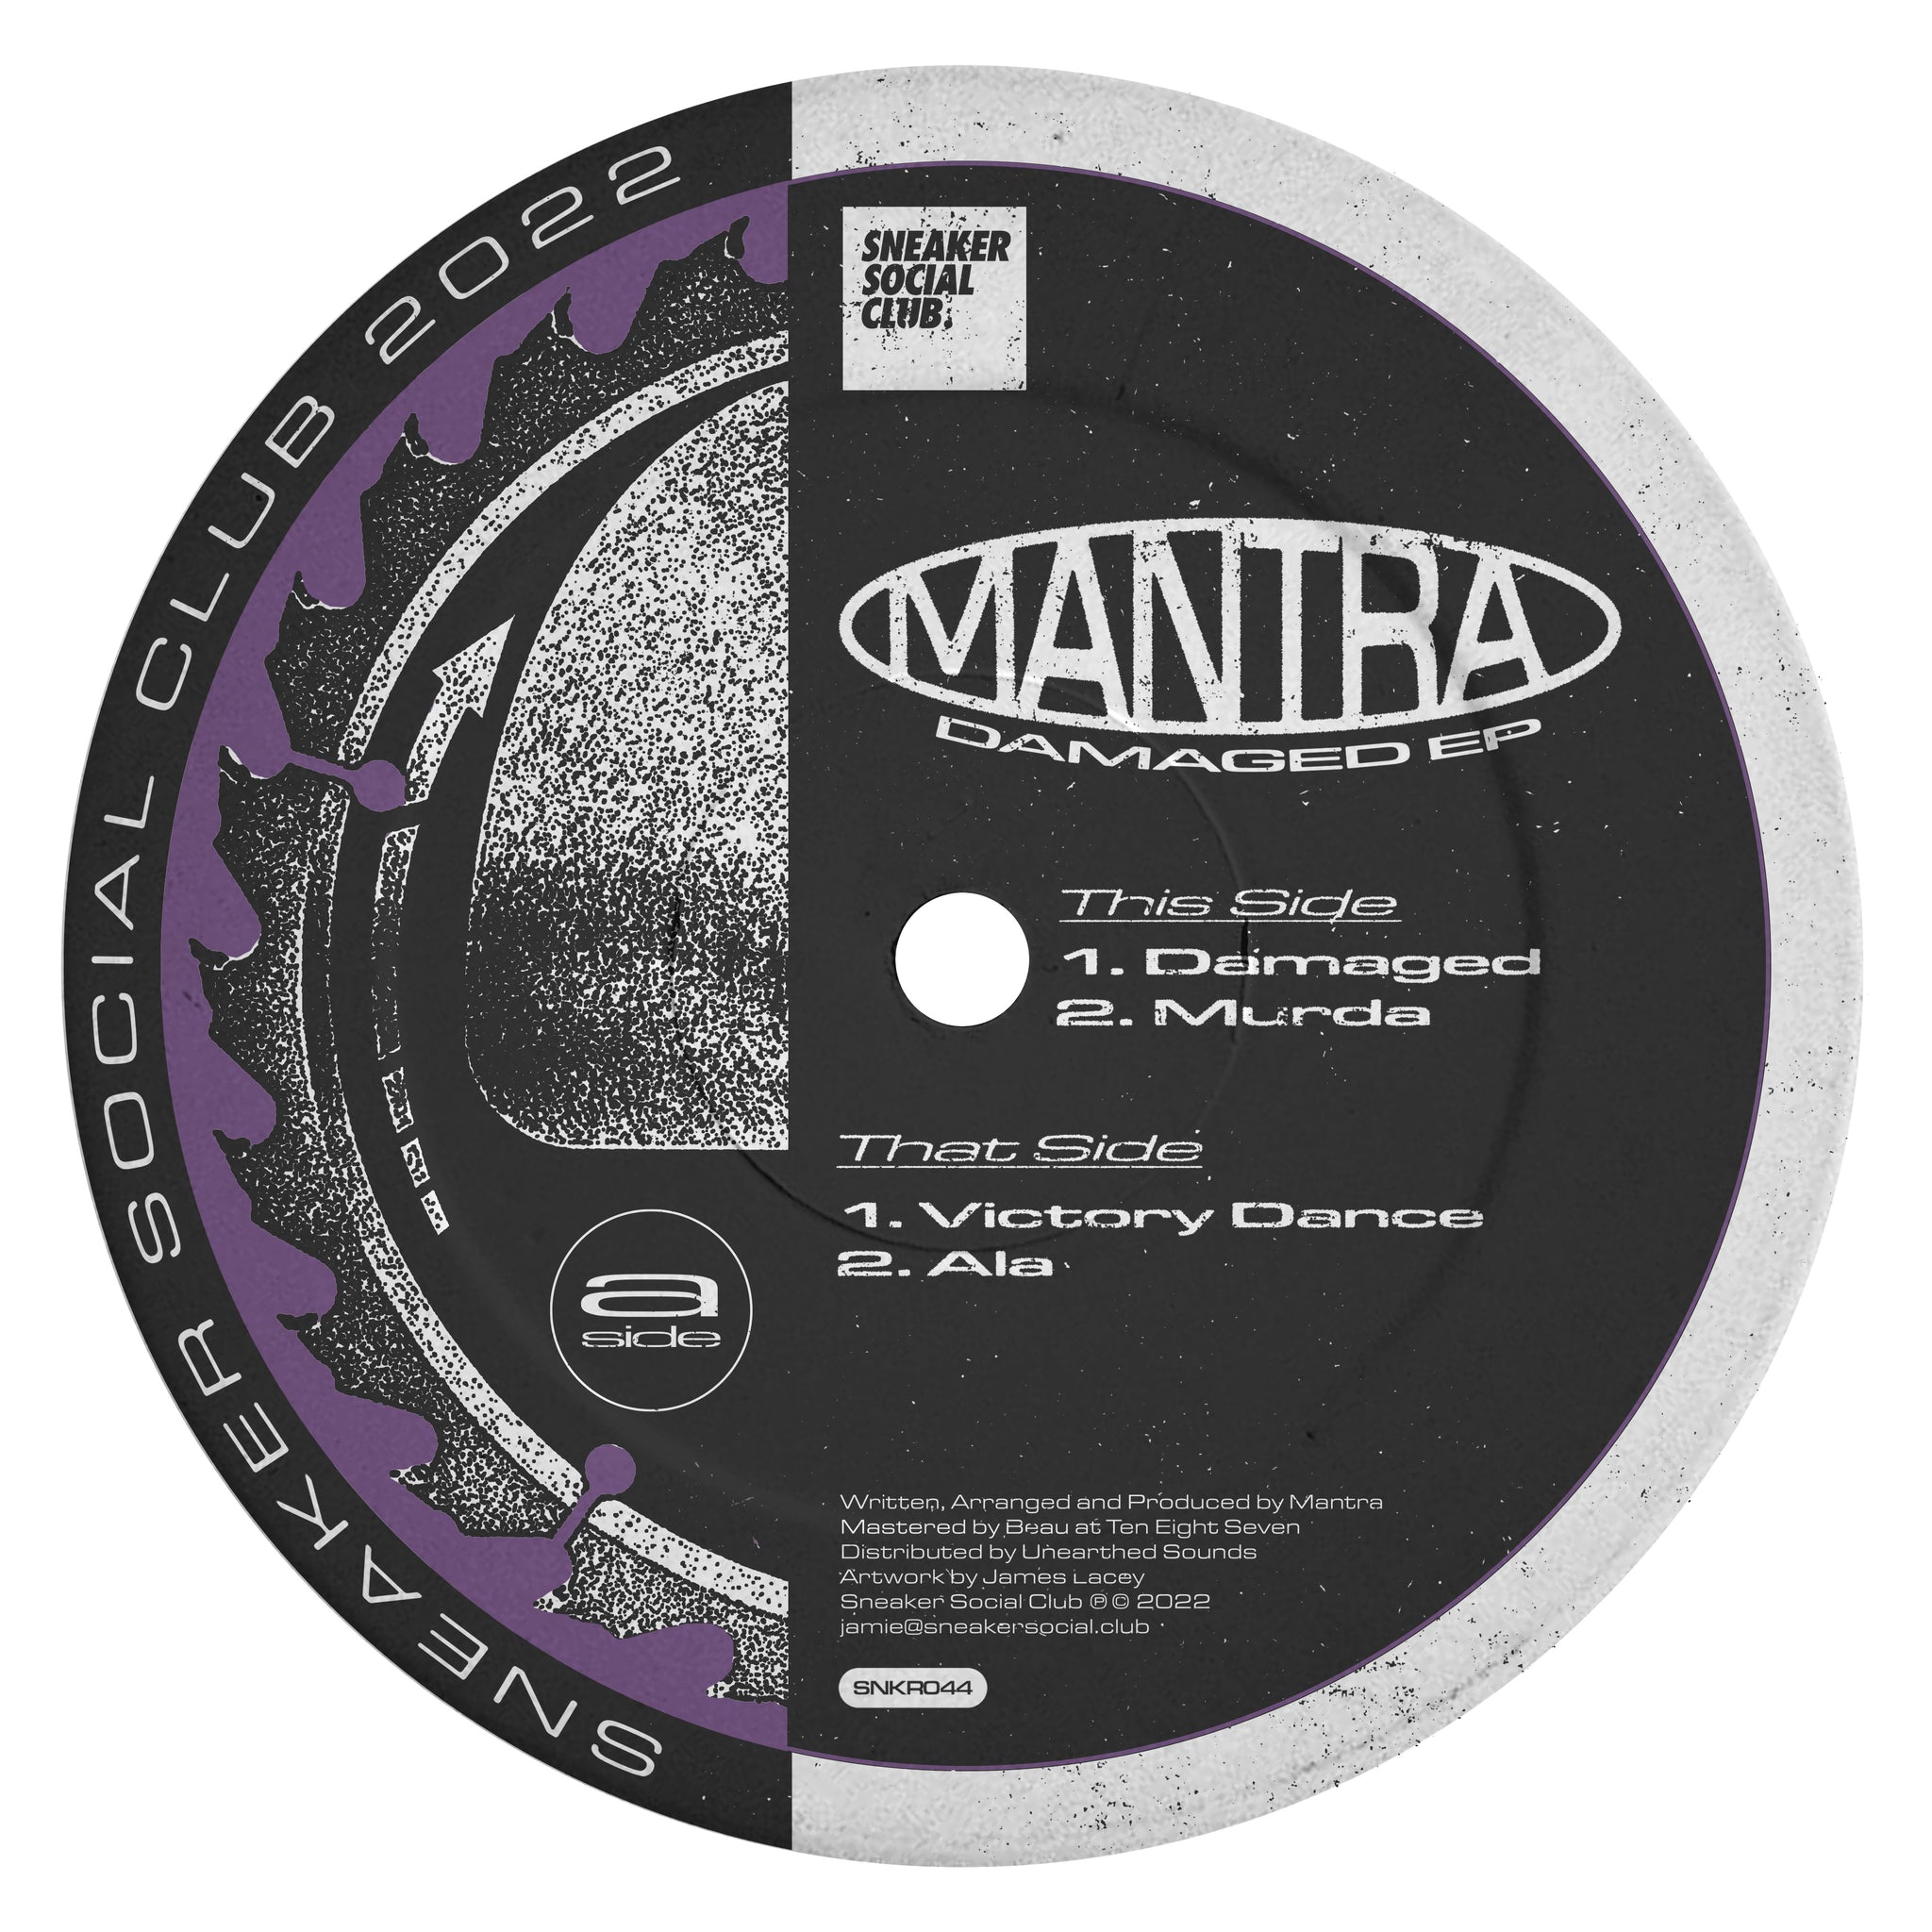 MANTRA 'DAMAGED EP' 12"